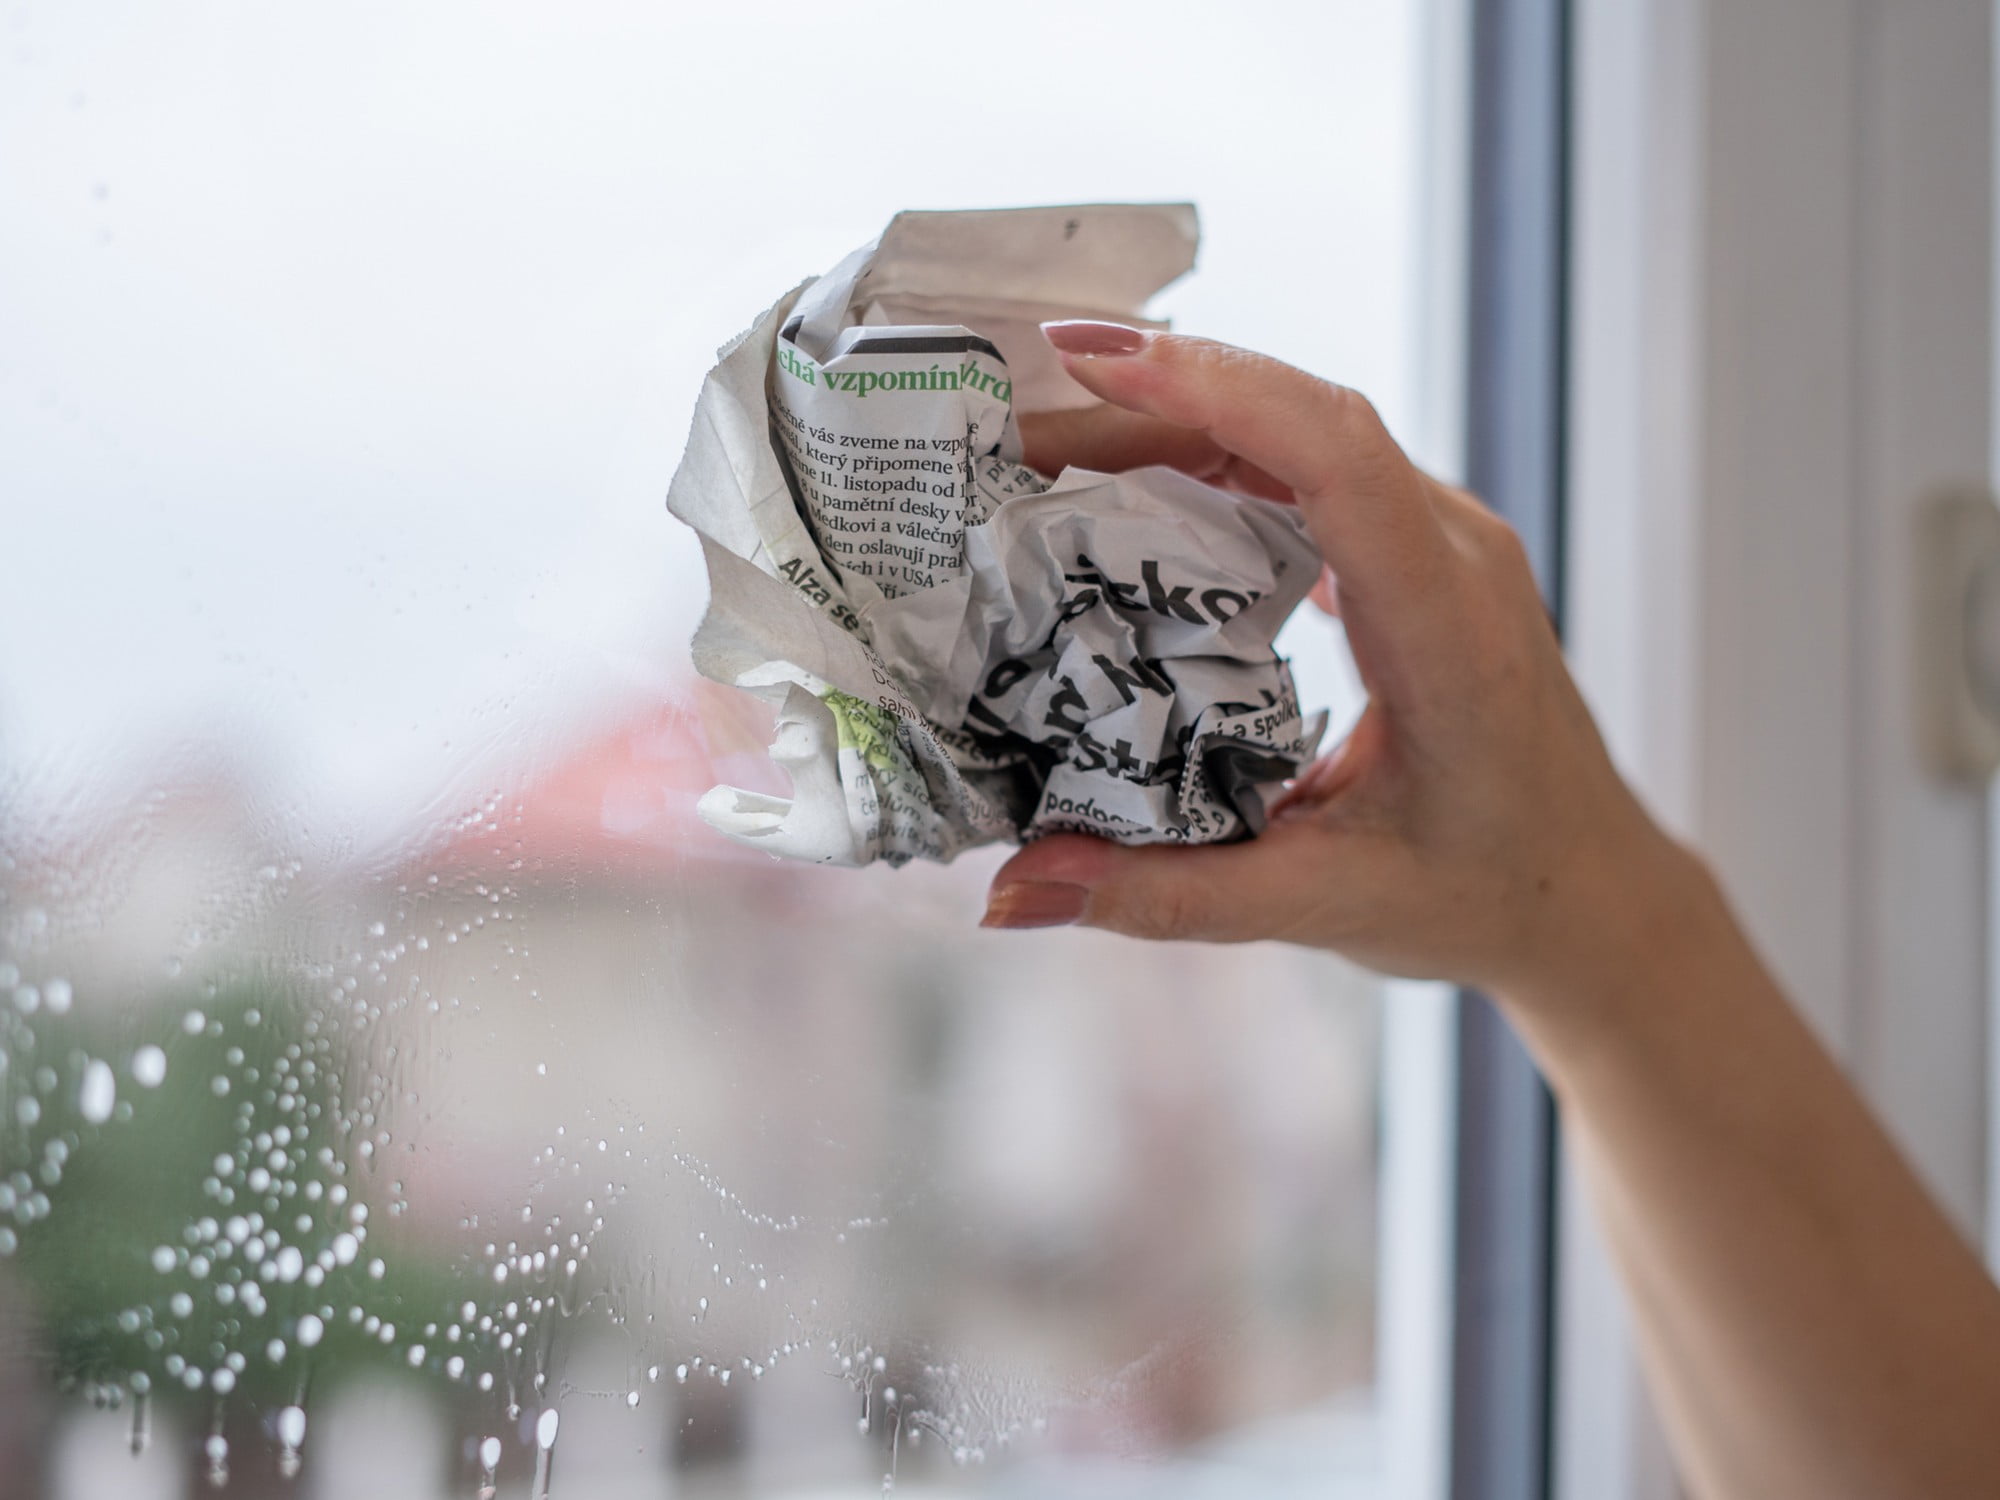 Vigyázz, ha újságpapírral mosod az ablakot: a festék kiszivároghat belőle, és foltot hagyhat a világos ablakkereten.